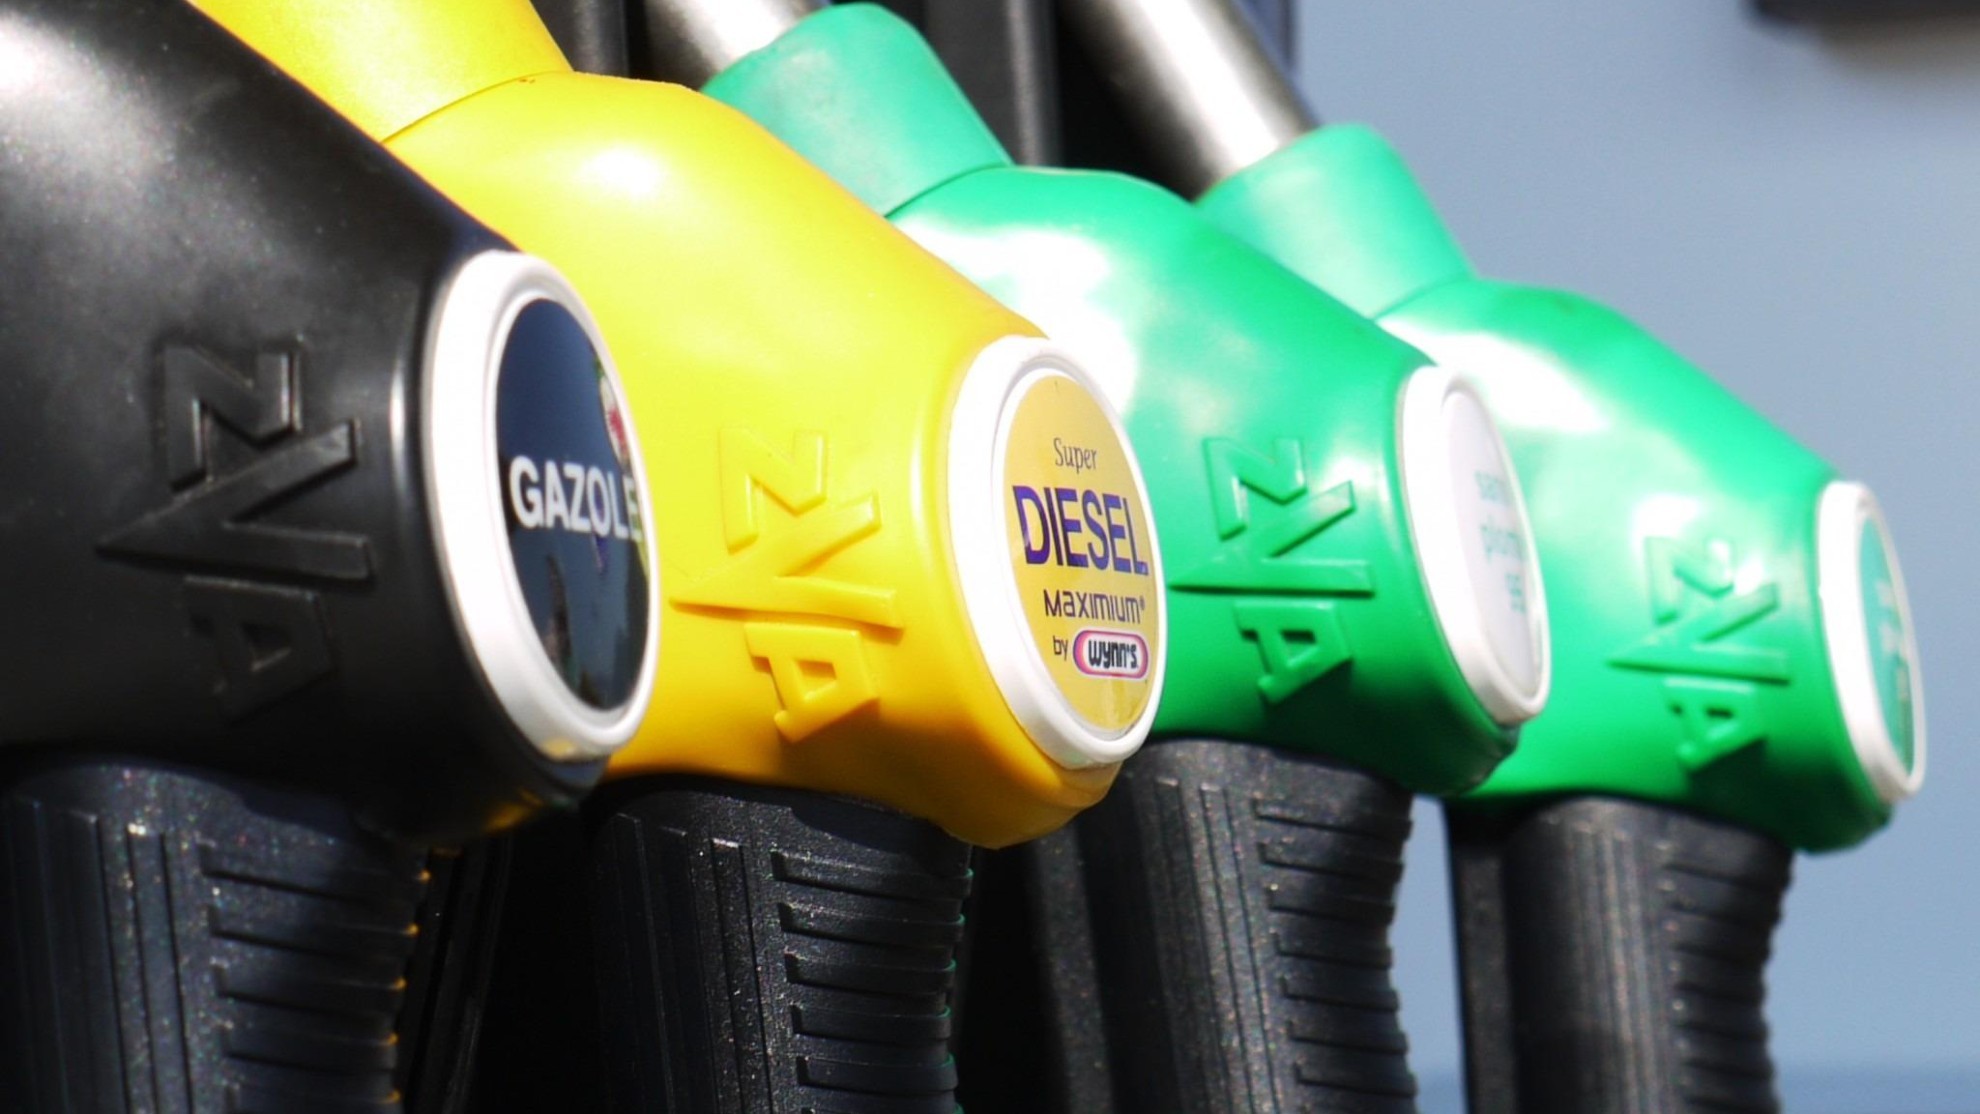 20 centimos - rebaja - descuento - gasolina - diesel - prorroga - subvencion - gobierno